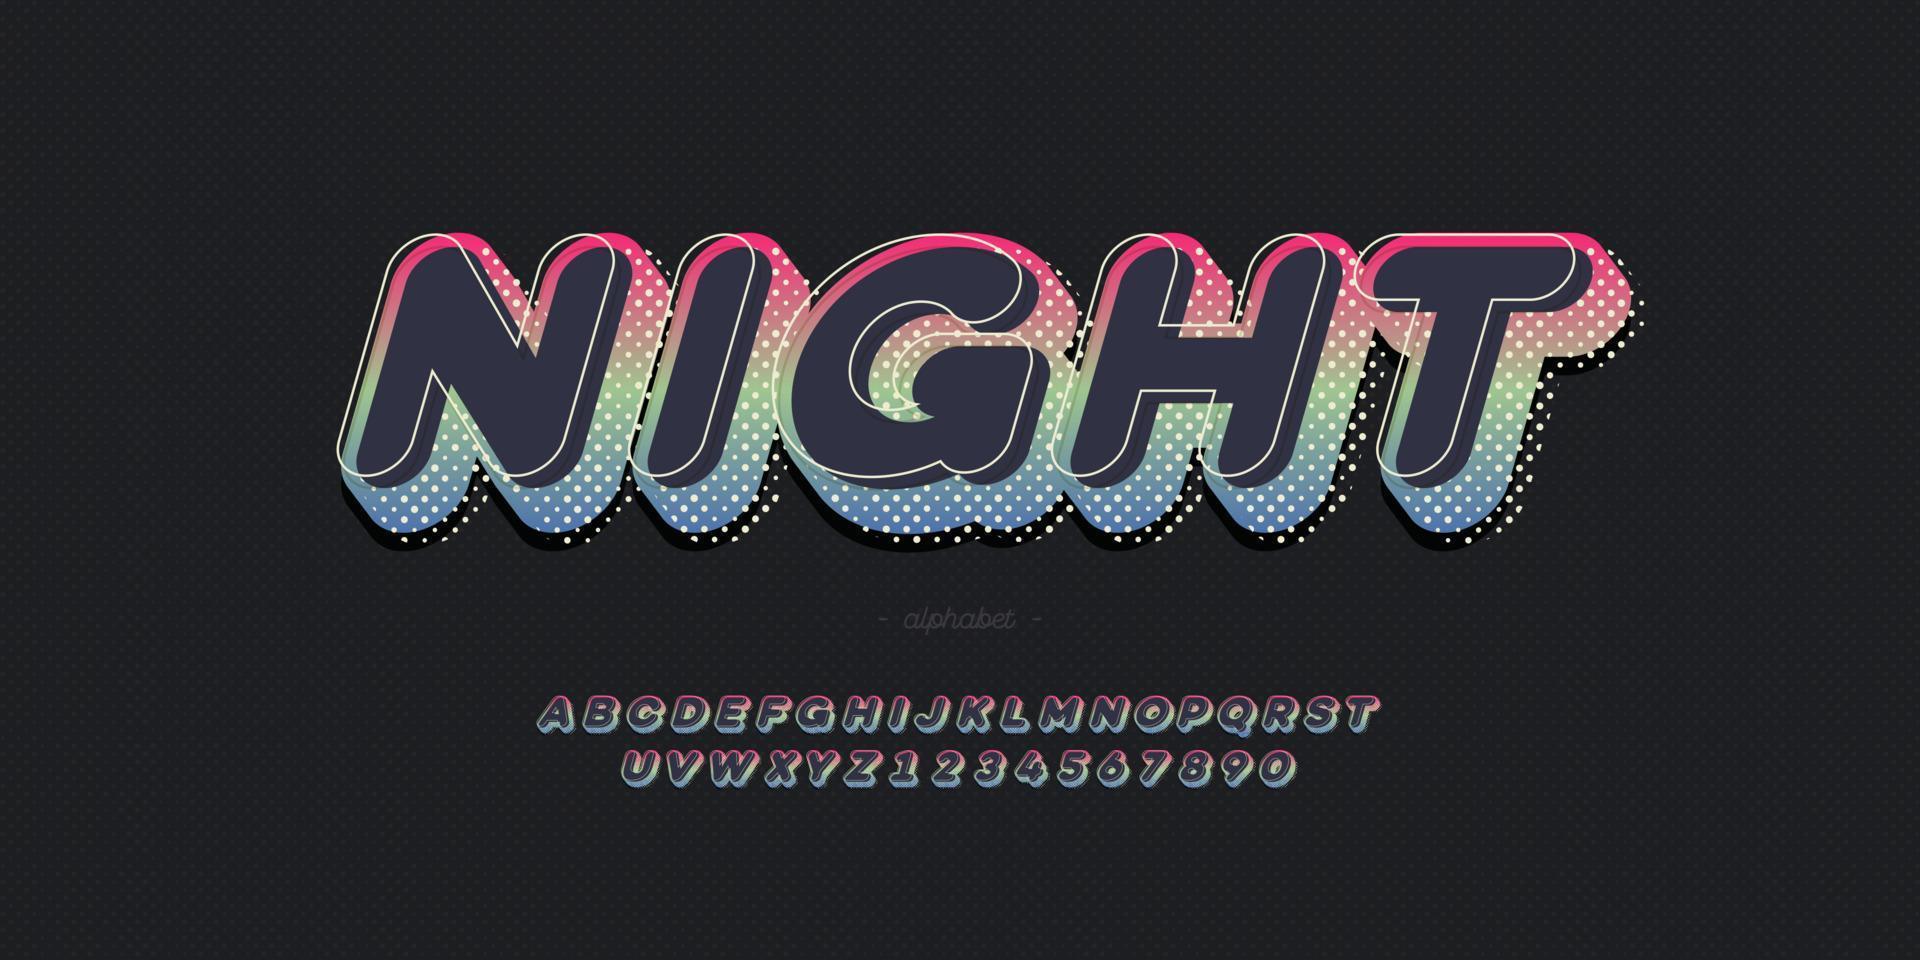 police de nuit de vecteur 3d typographie audacieuse à la mode